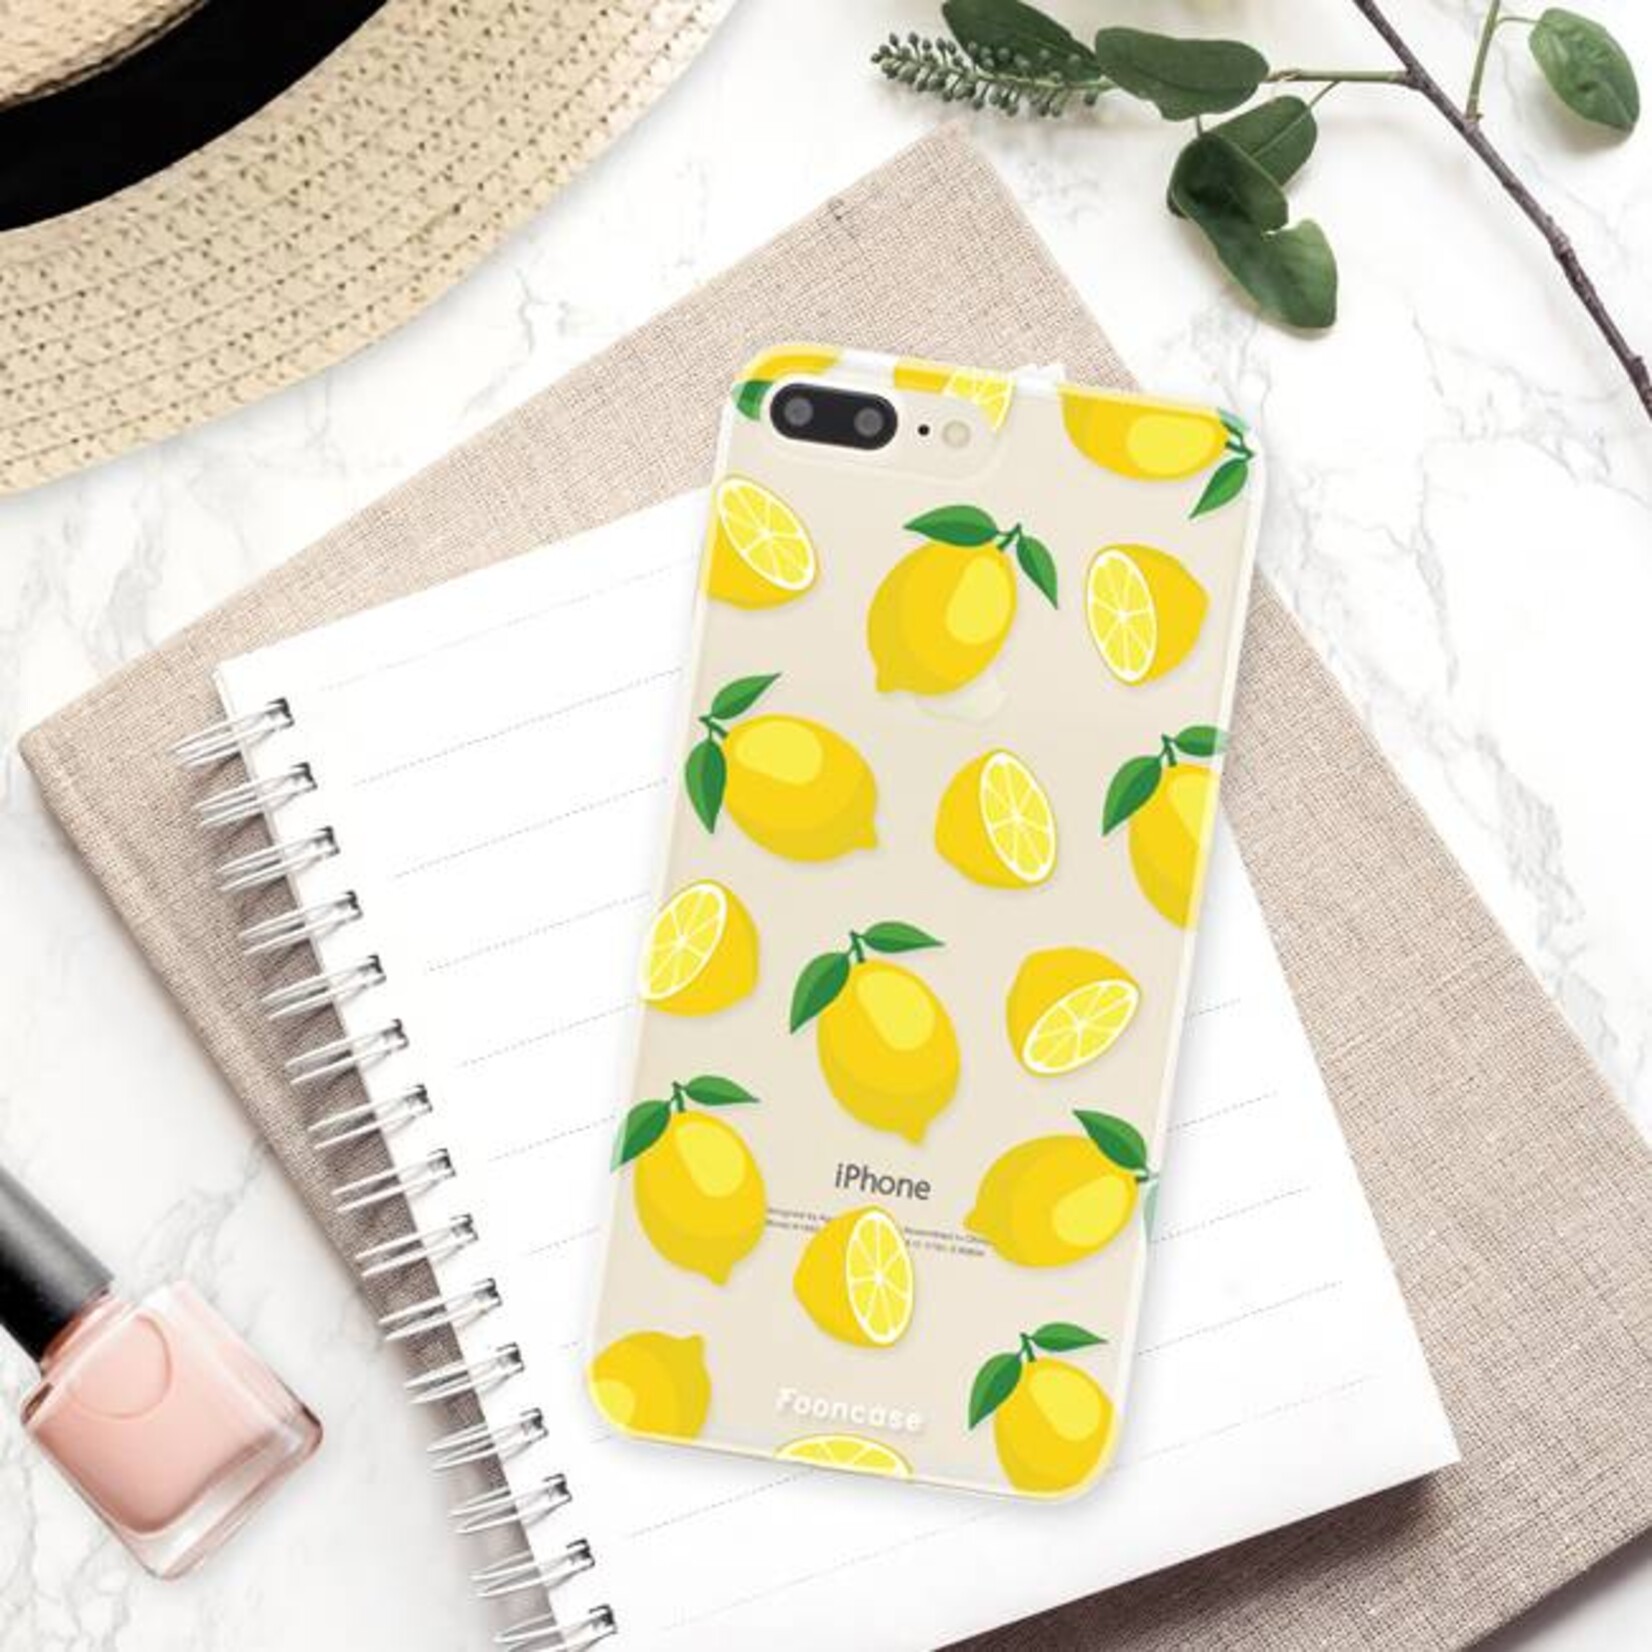 FOONCASE Iphone 8 Plus Cover - Lemons